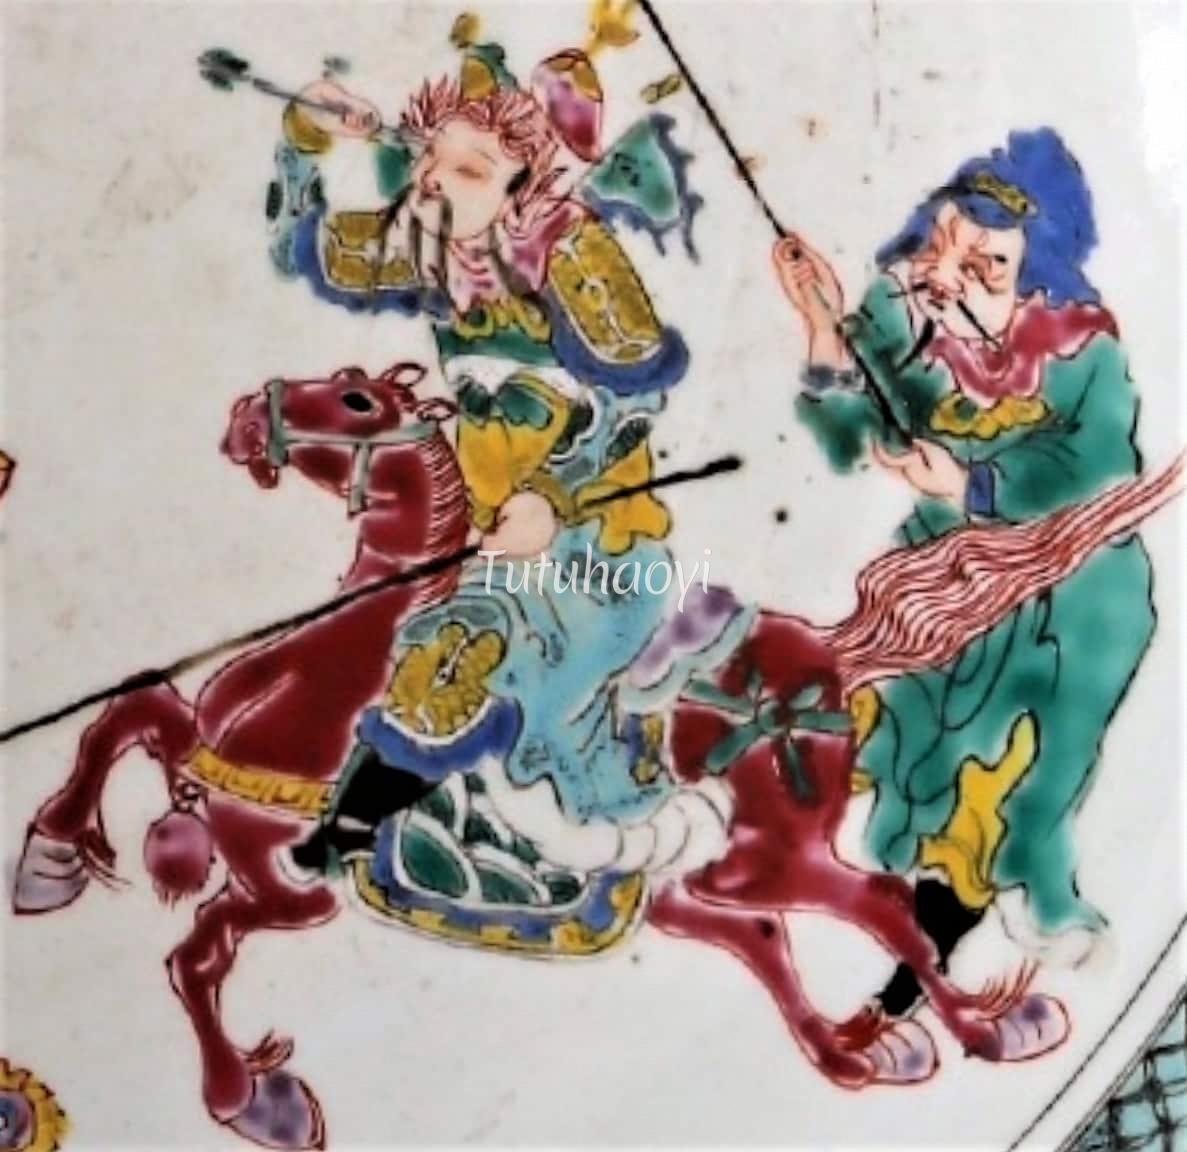 Xiahou Dun yanking arrow Tutuhaoyi